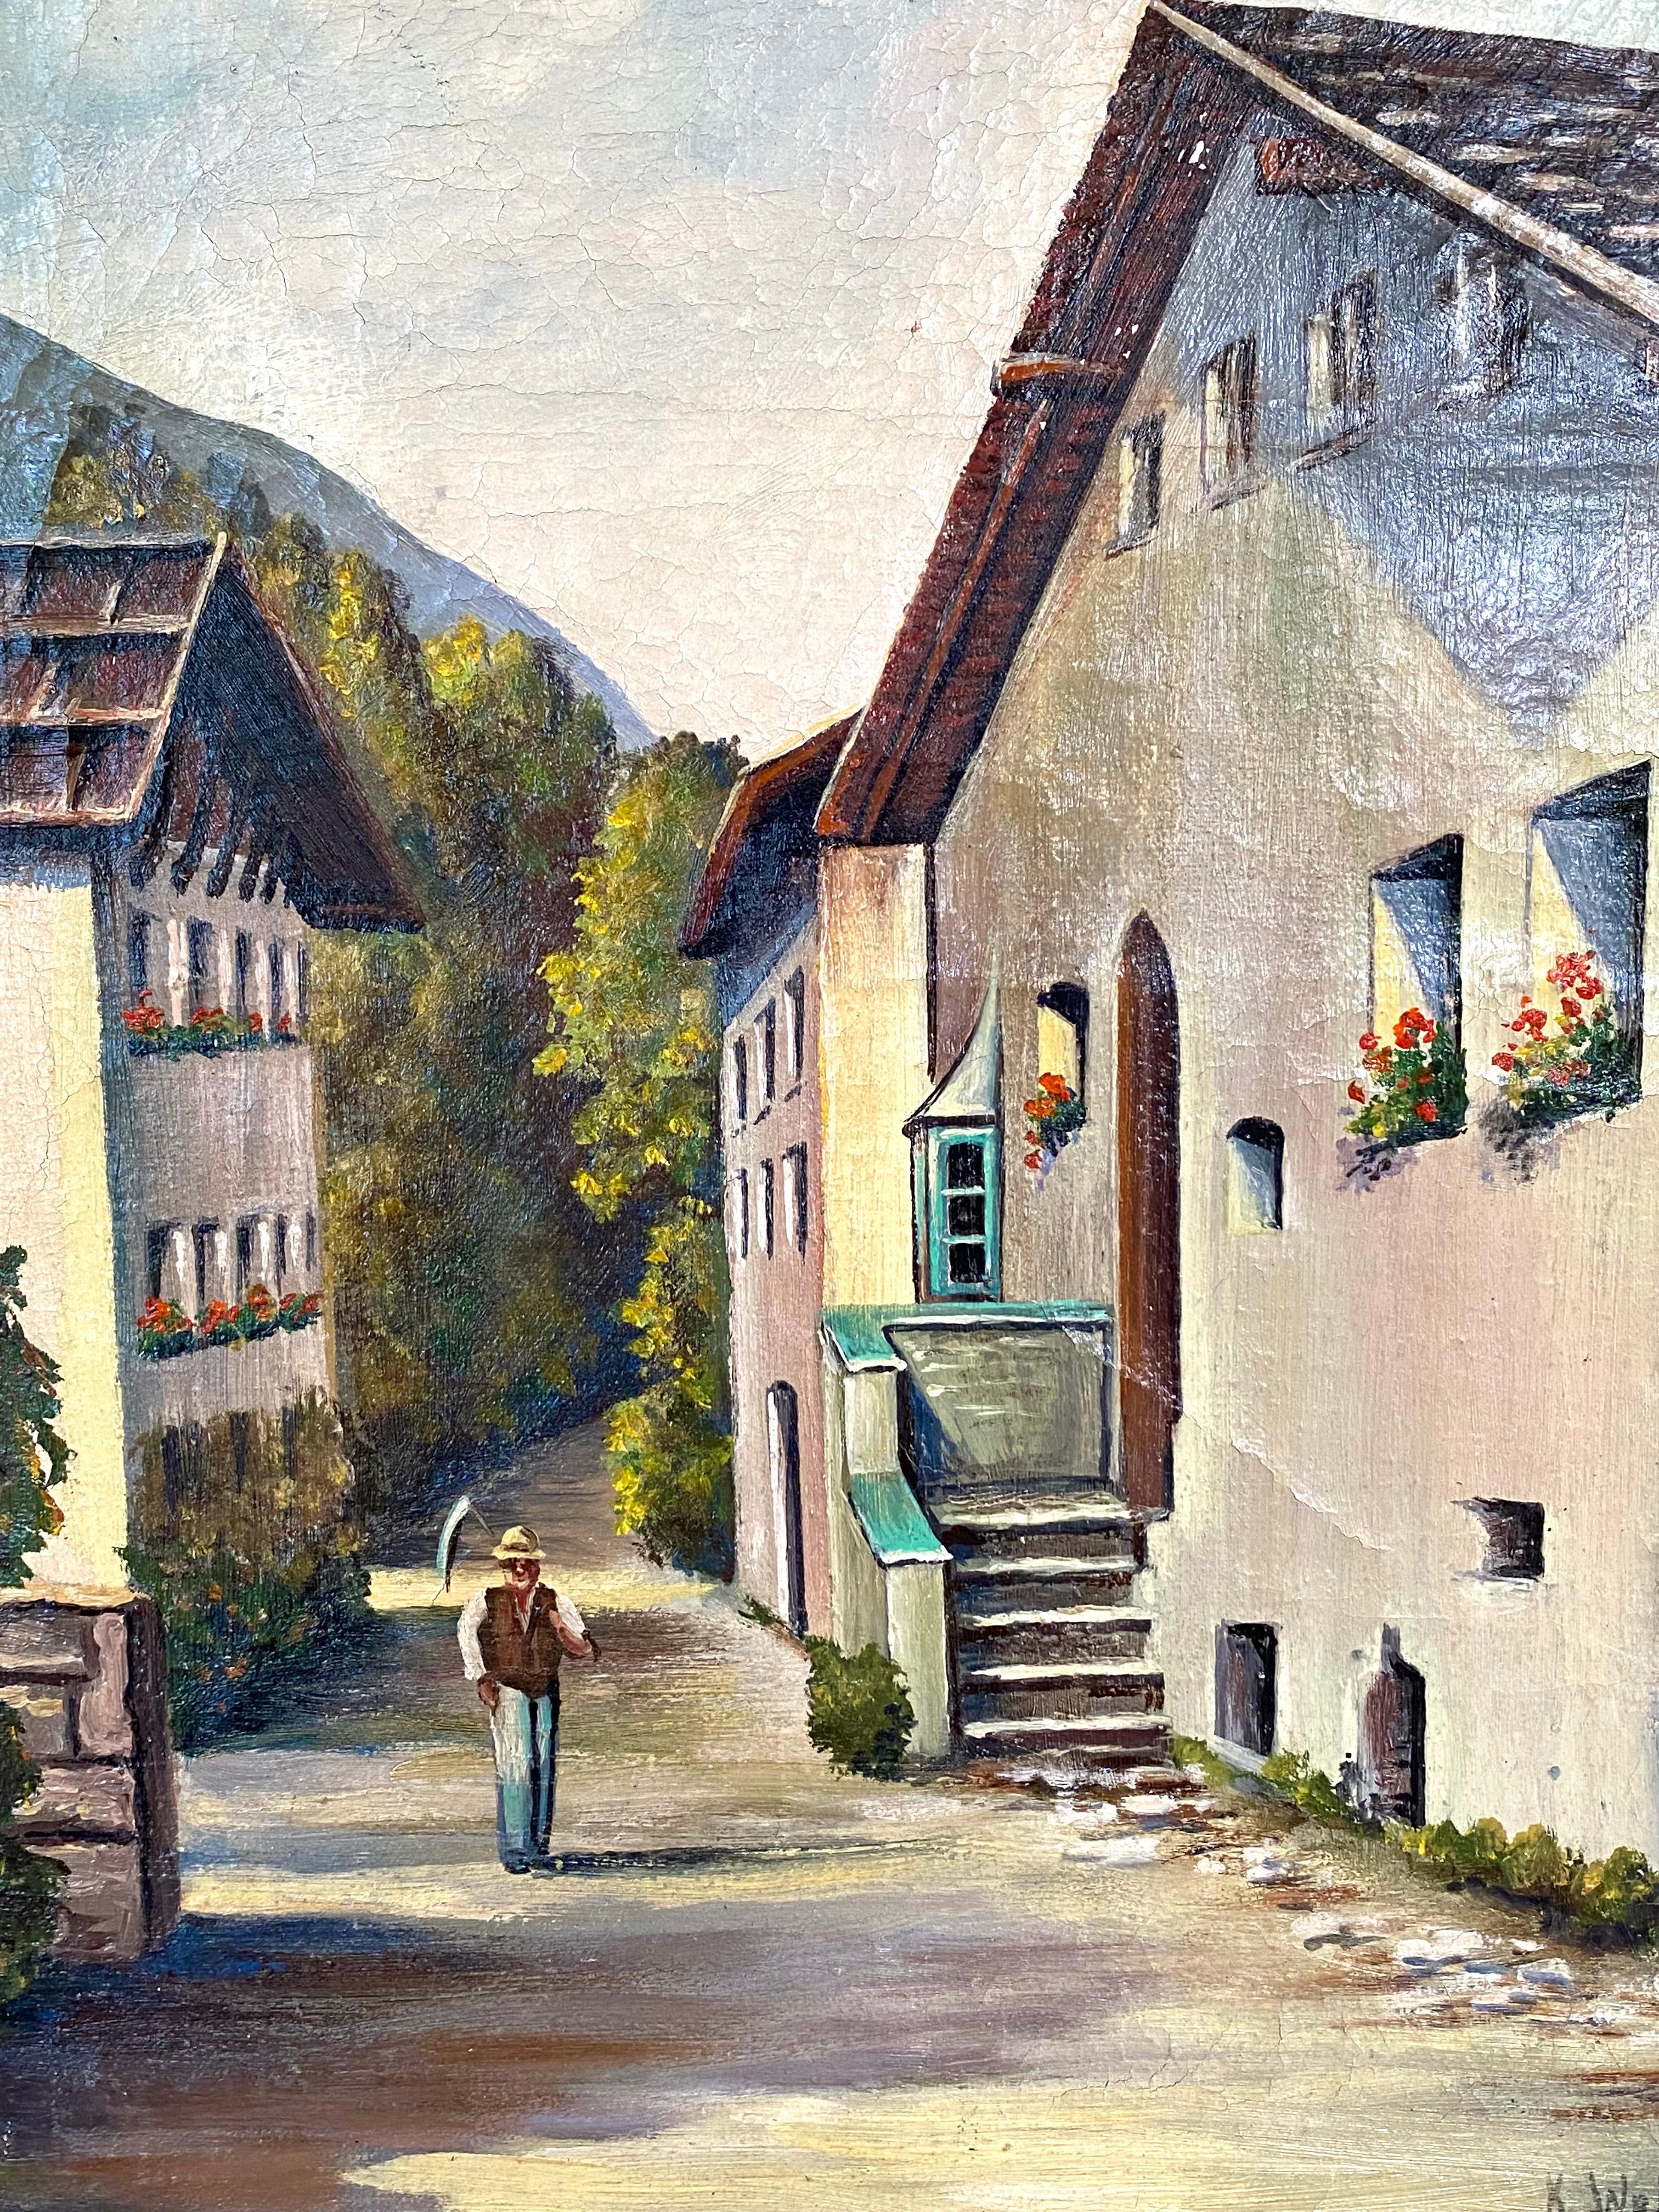 Öl auf Leinwand auf Holzplatte eines Arbeiters mit einer Sense, der von einem Arbeitstag nach Hause kommt. In einem malerischen Schweizer Dorf. Das Gemälde wird der Hand des Schweizer Künstlers Karl Adolph Weber zugeschrieben.  Gezeichnet 